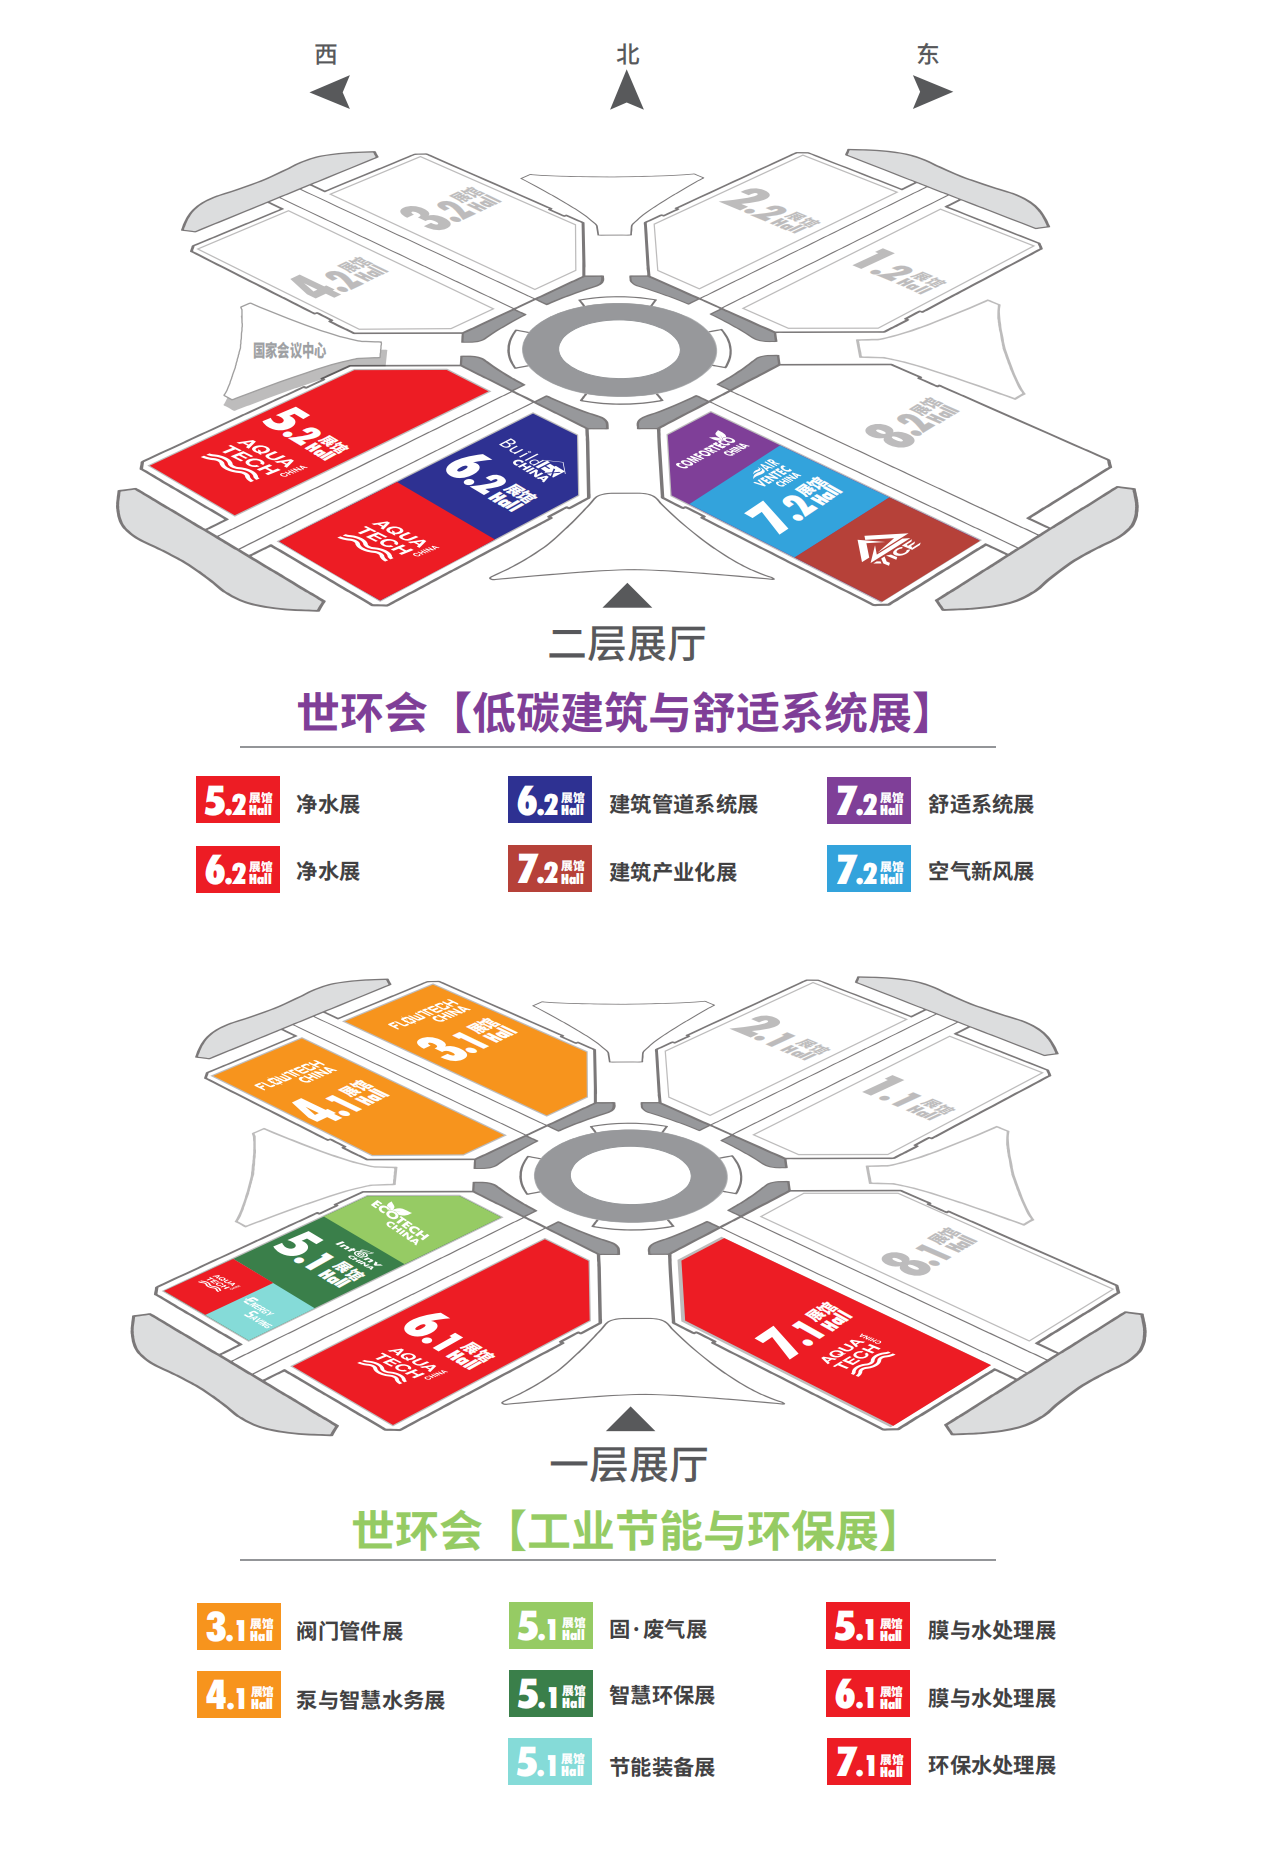 展馆分布-上海空气新风展 AIRVENTEC CHINA 2022.6.8-10新风系统 通风设备 空气净化